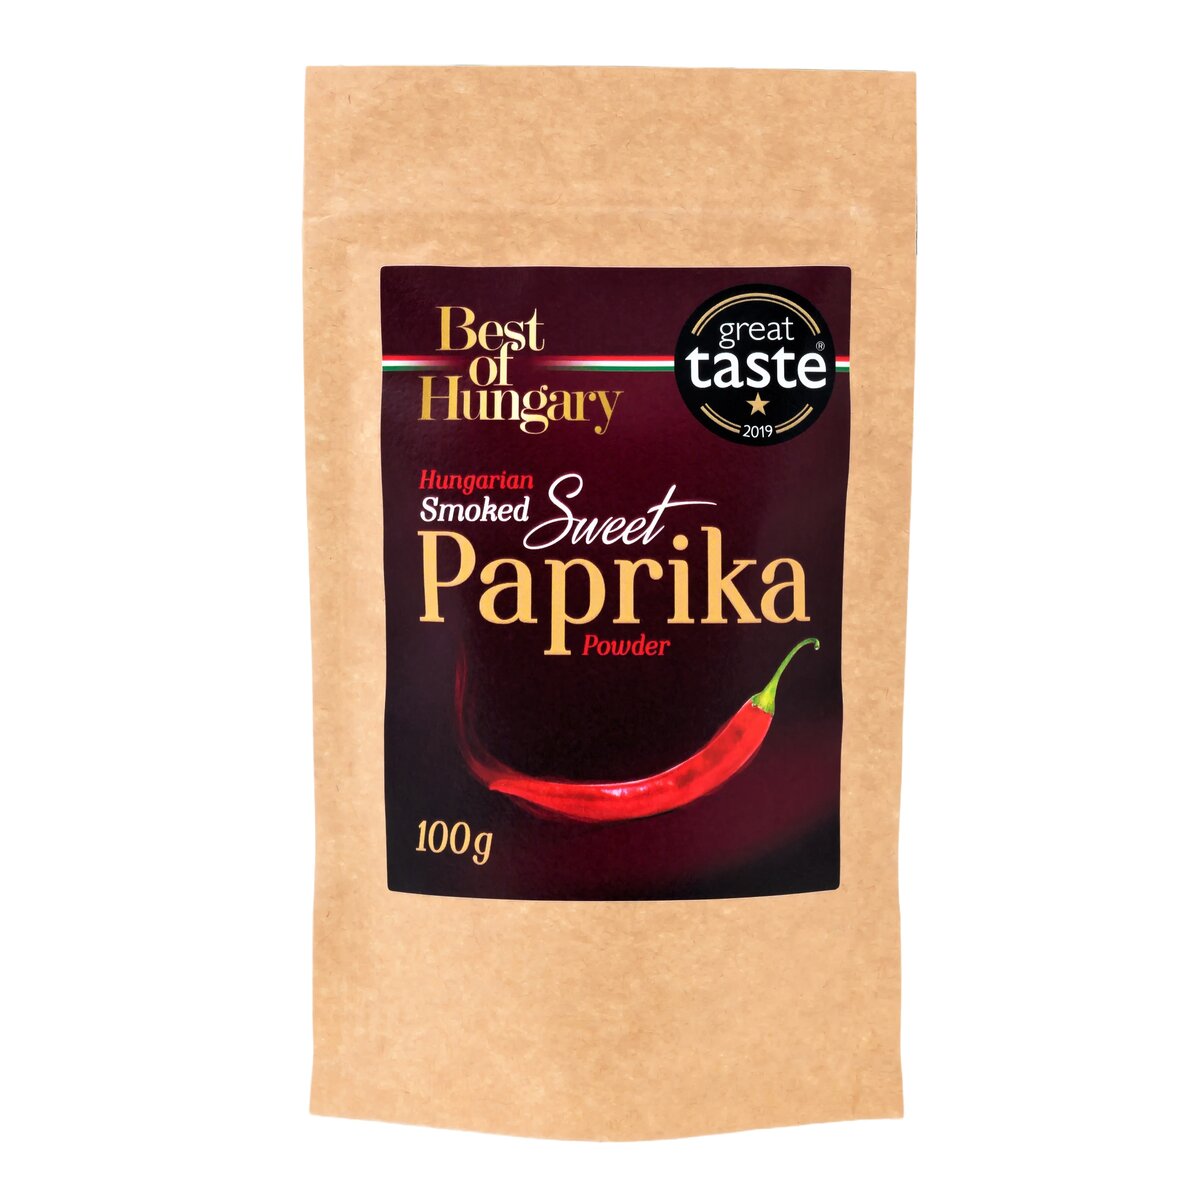 Hungarian Sweet Smoked Paprika 100g